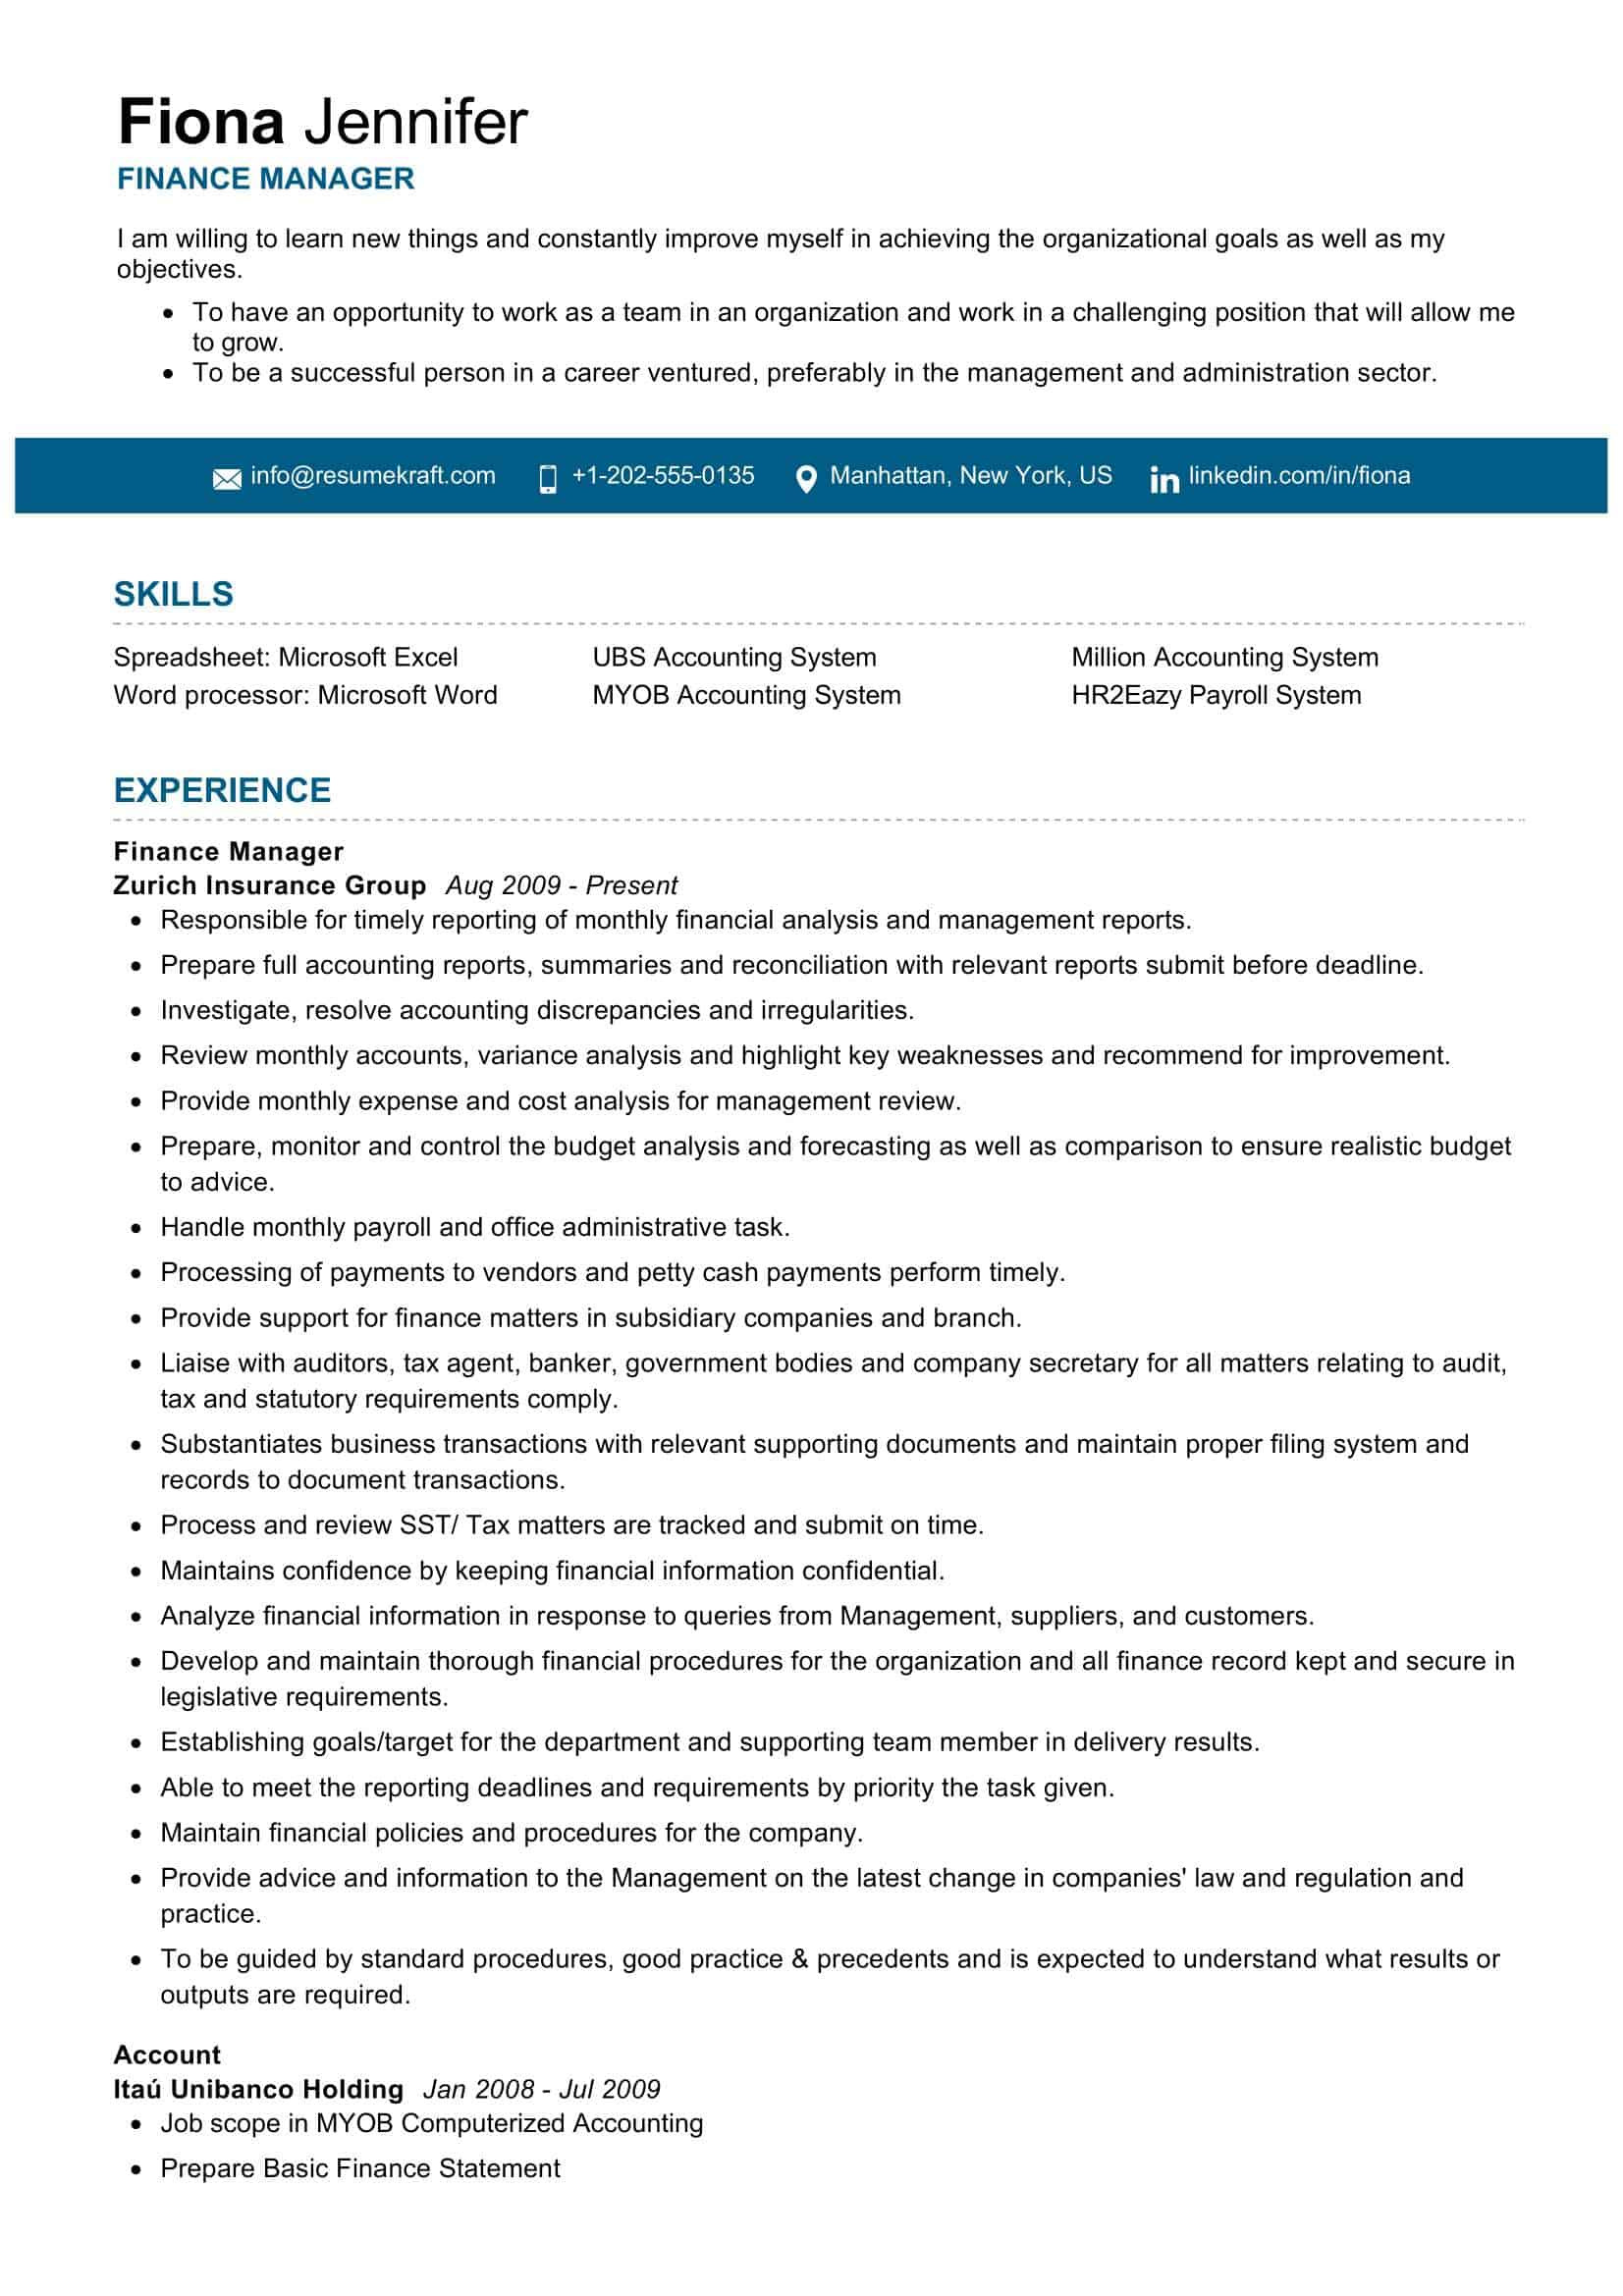 Sample Resume Objectives for Finance Jobs Finance Manager Resume Sample 2022 Writing Tips – Resumekraft